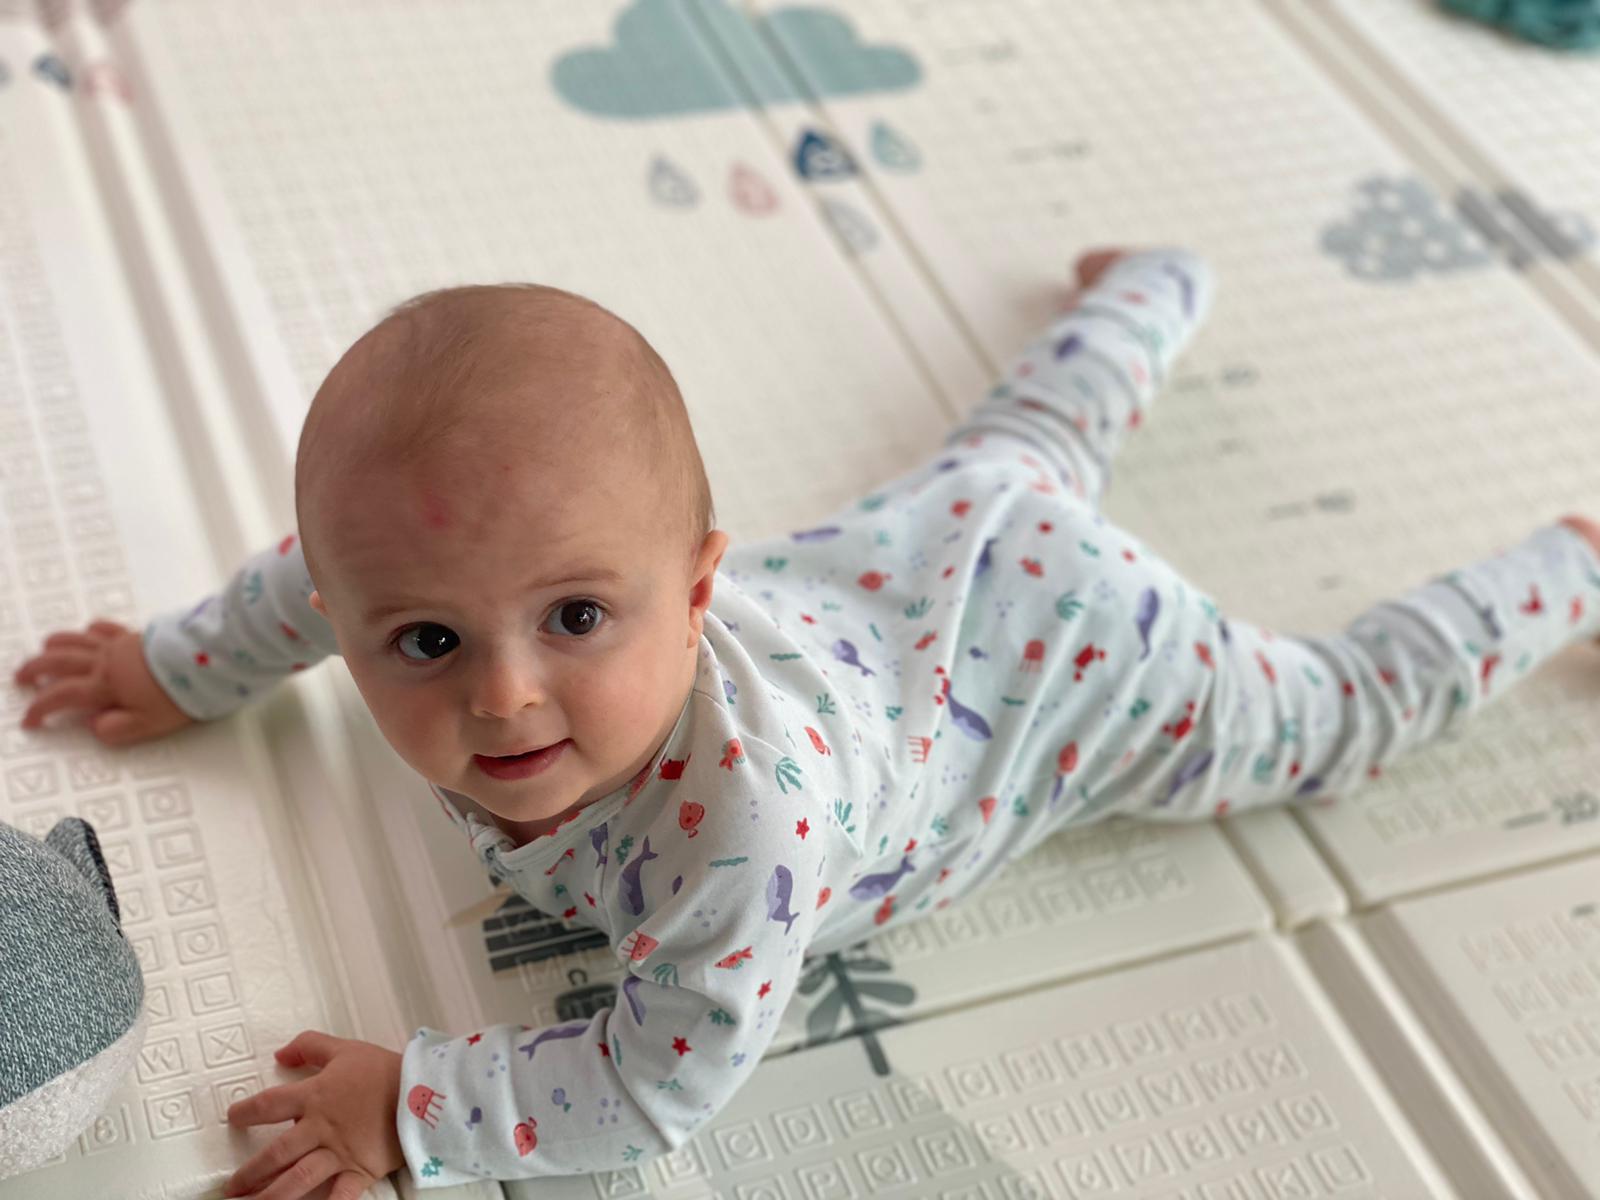 Bébé habillé avec son pyjama de la collection mer se baladant sur son tapis de jeu. Bébé à l'aise et confortable dans son pyjama.